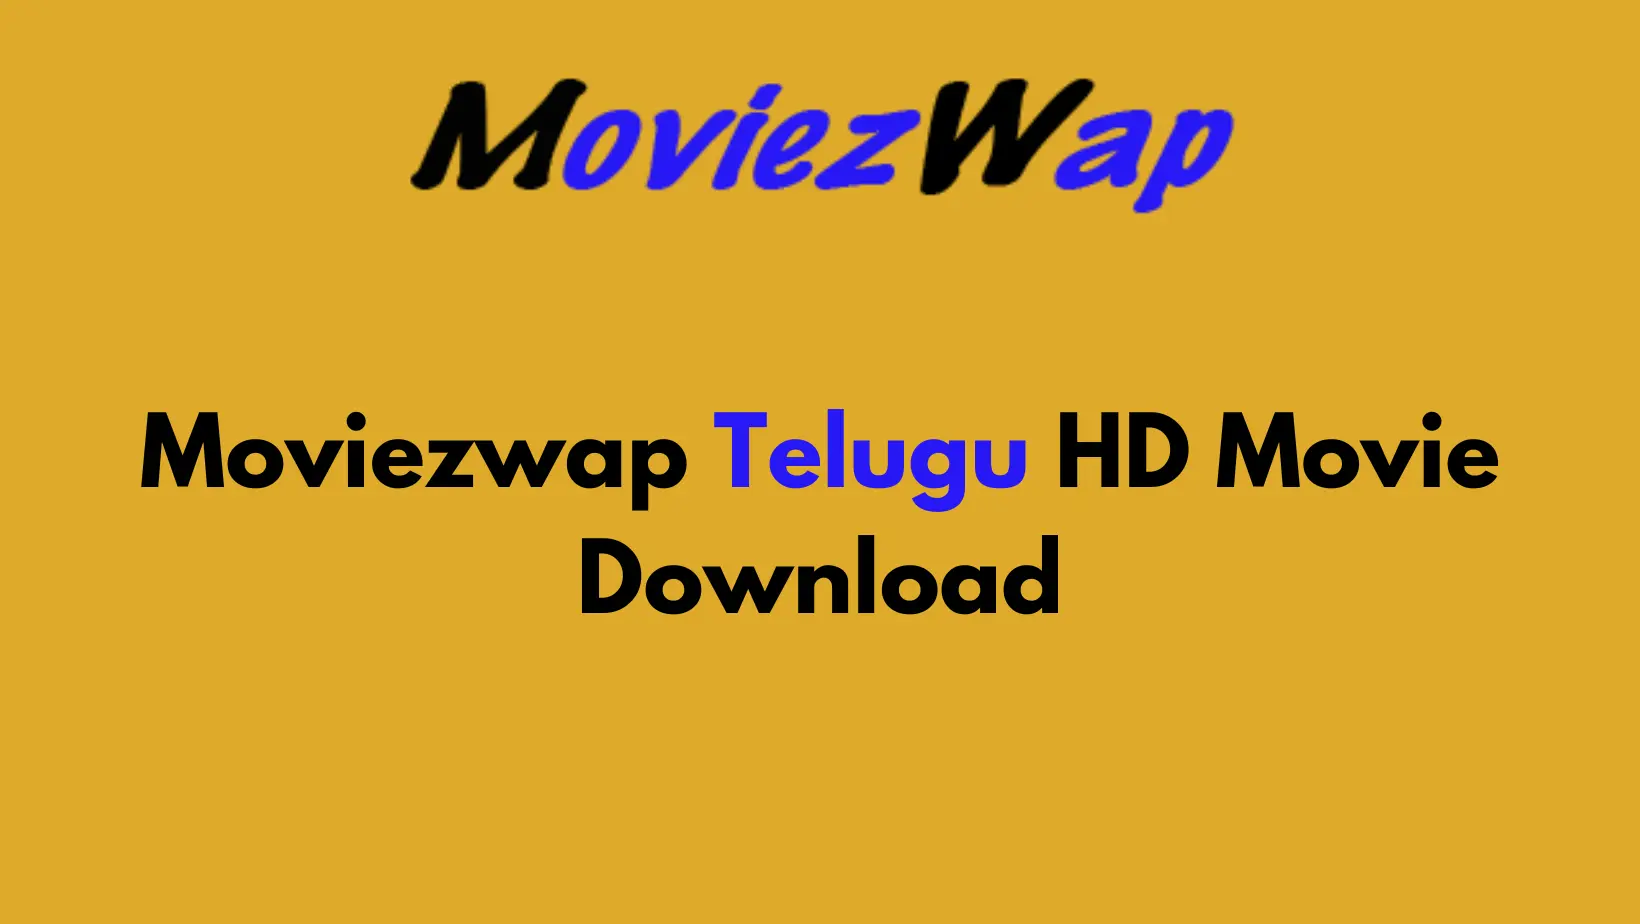 Moviezwap Telugu HD Movie Download